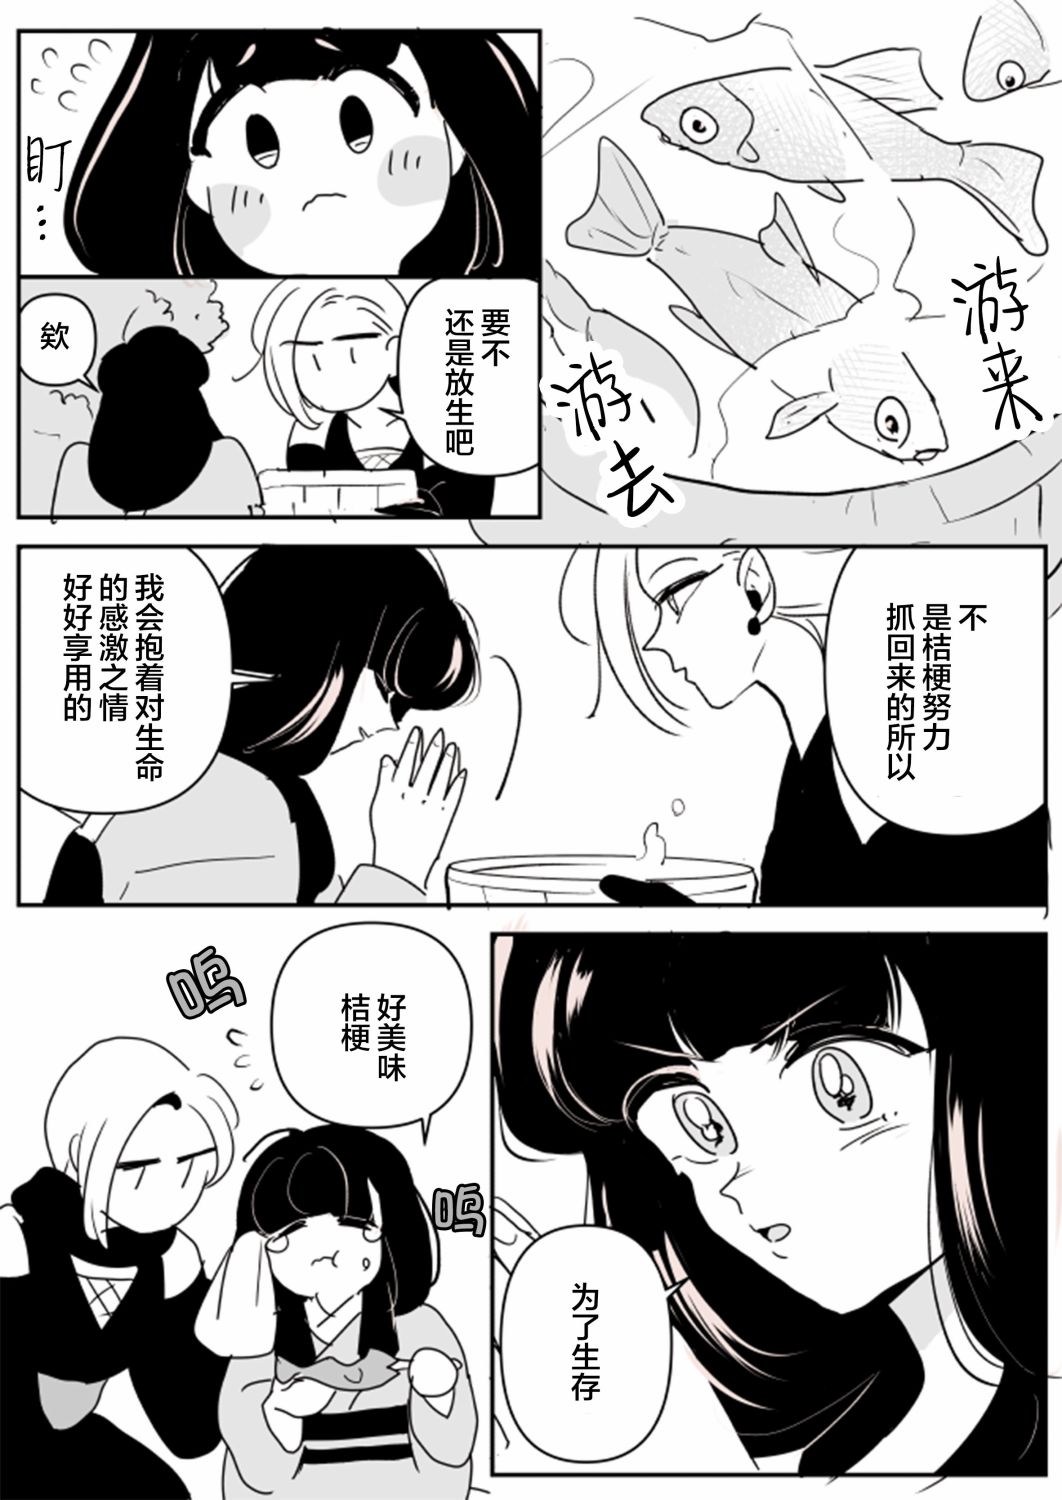 年歲差百合漫畫集 - 女忍者與公主02 - 2